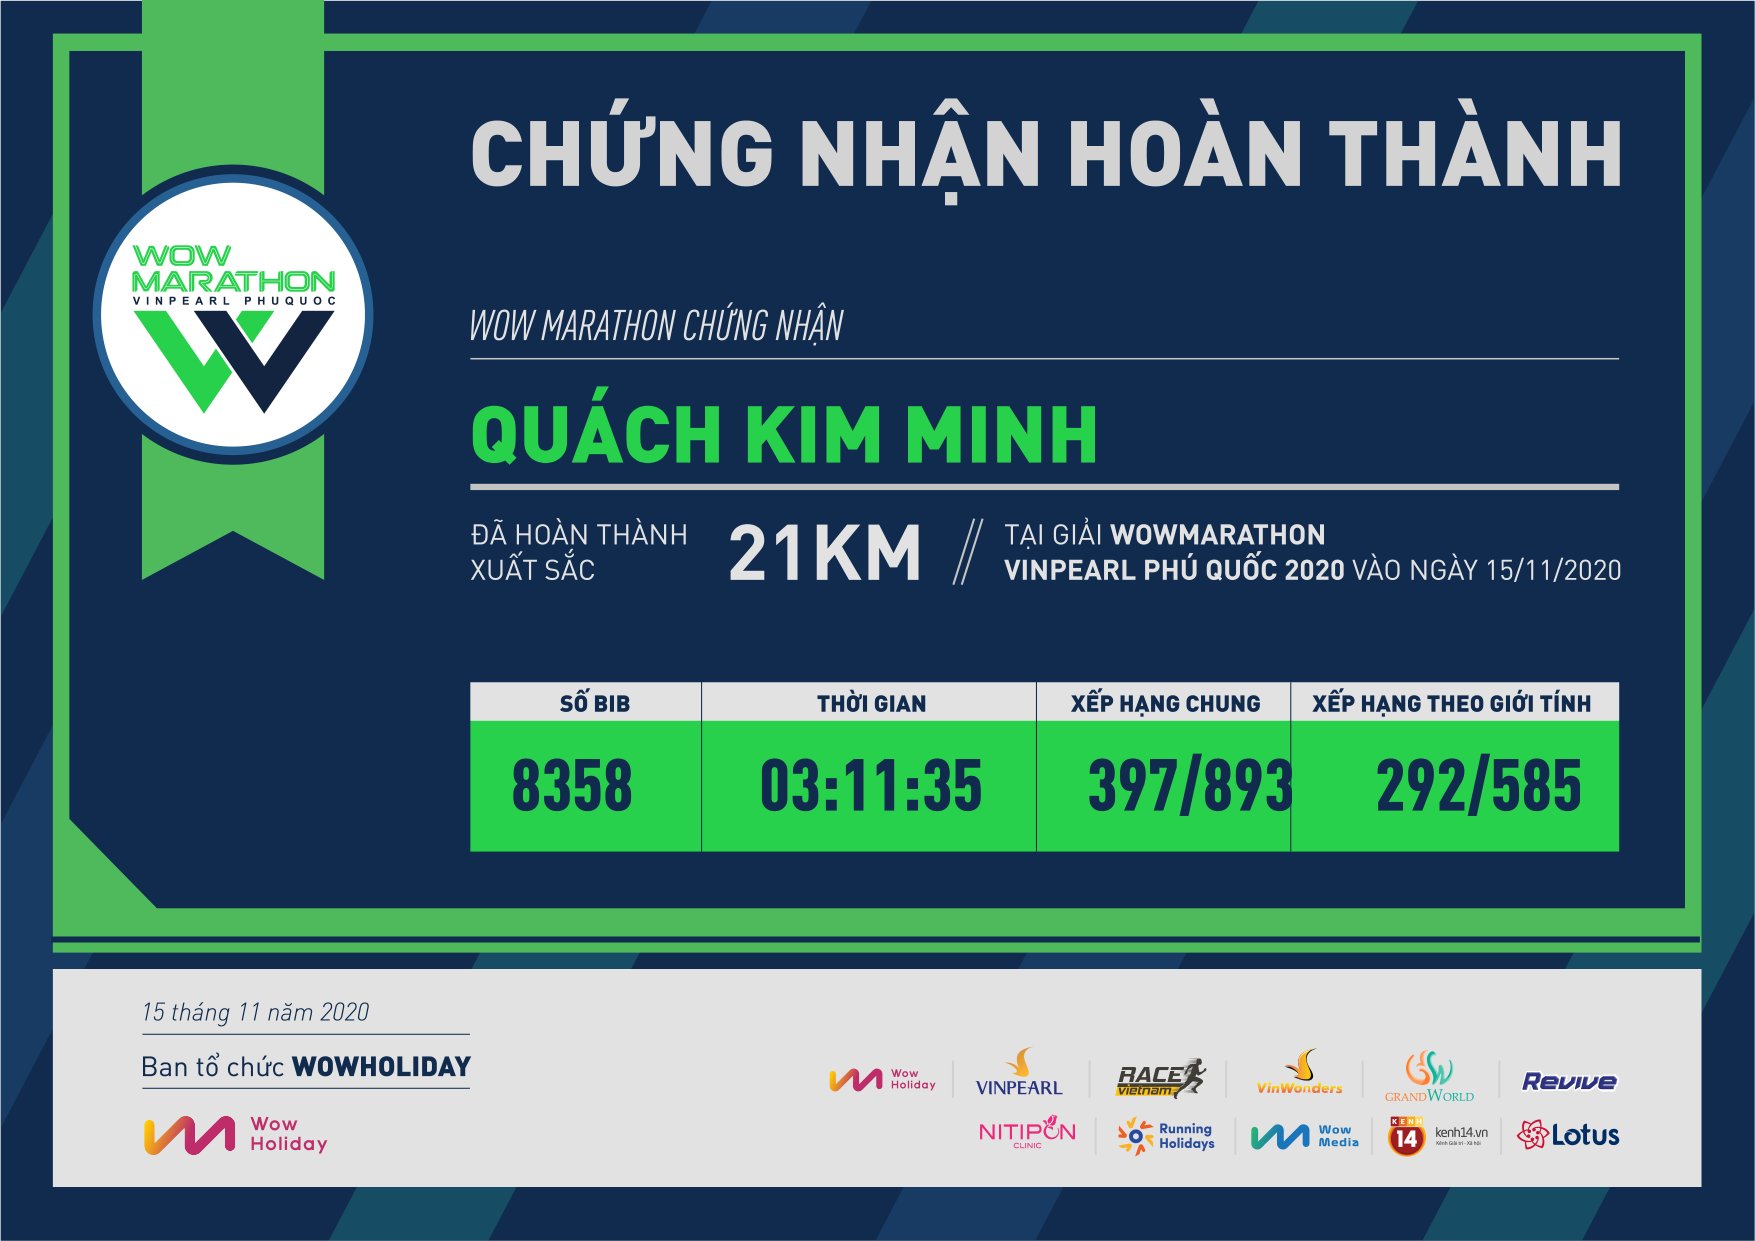 8358 - Quách Kim Minh